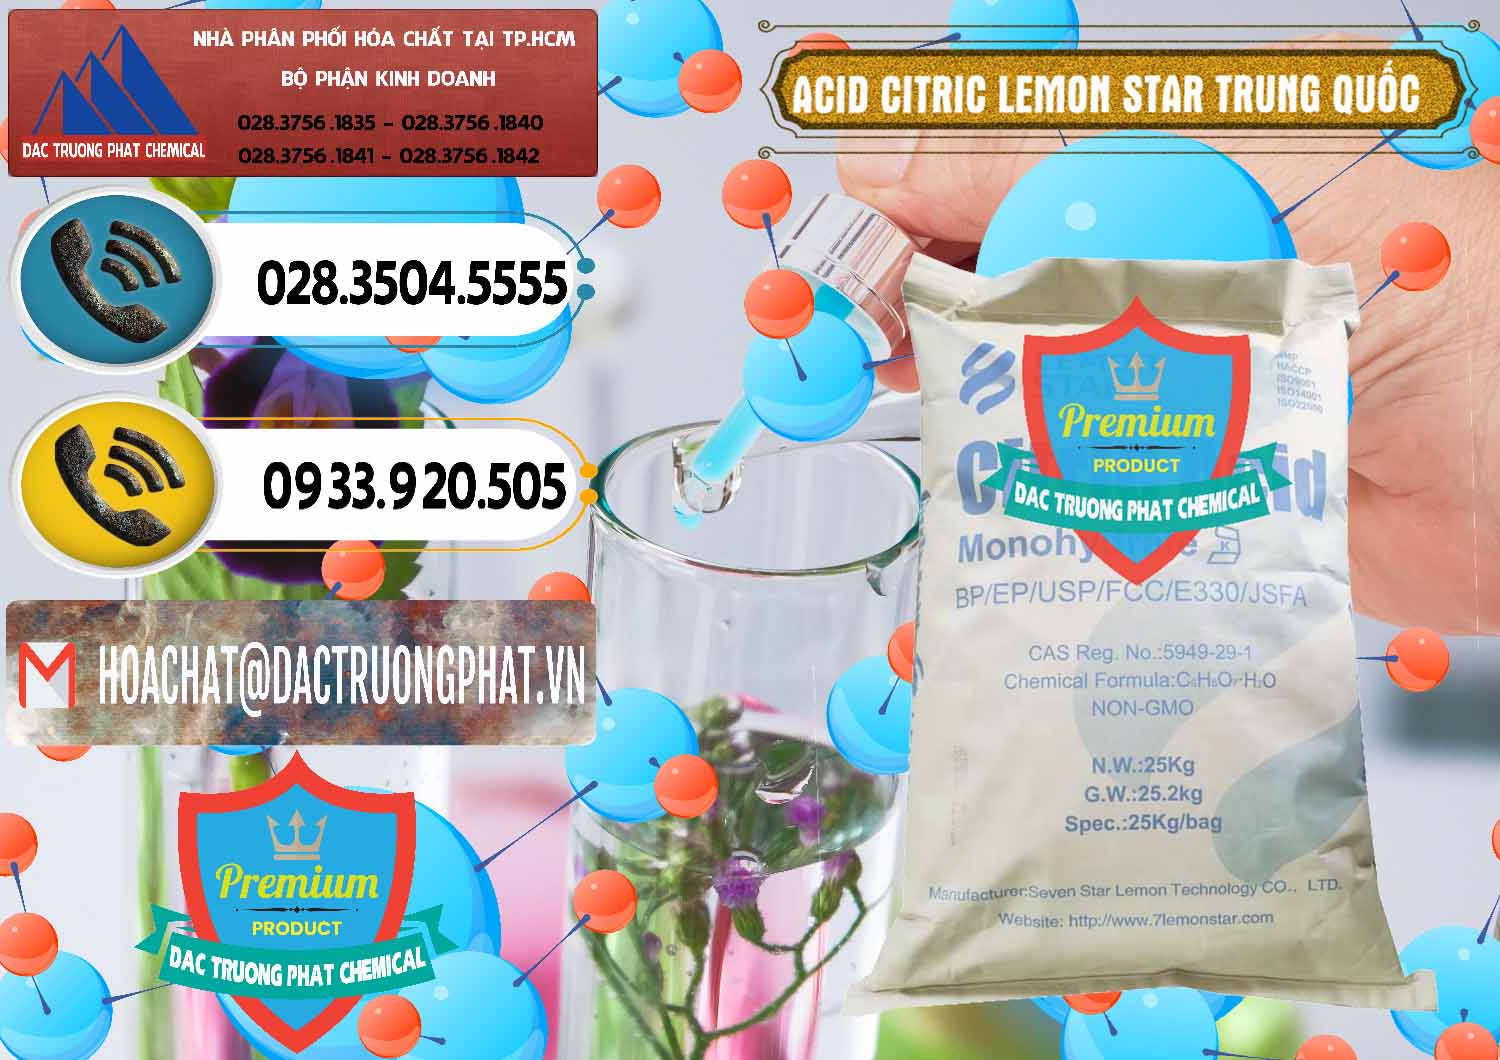 Chuyên kinh doanh & bán Acid Citric - Axit Citric BP/EP/USP/FCC/E330 Lemon Star Trung Quốc China - 0286 - Chuyên kinh doanh - phân phối hóa chất tại TP.HCM - hoachatdetnhuom.vn